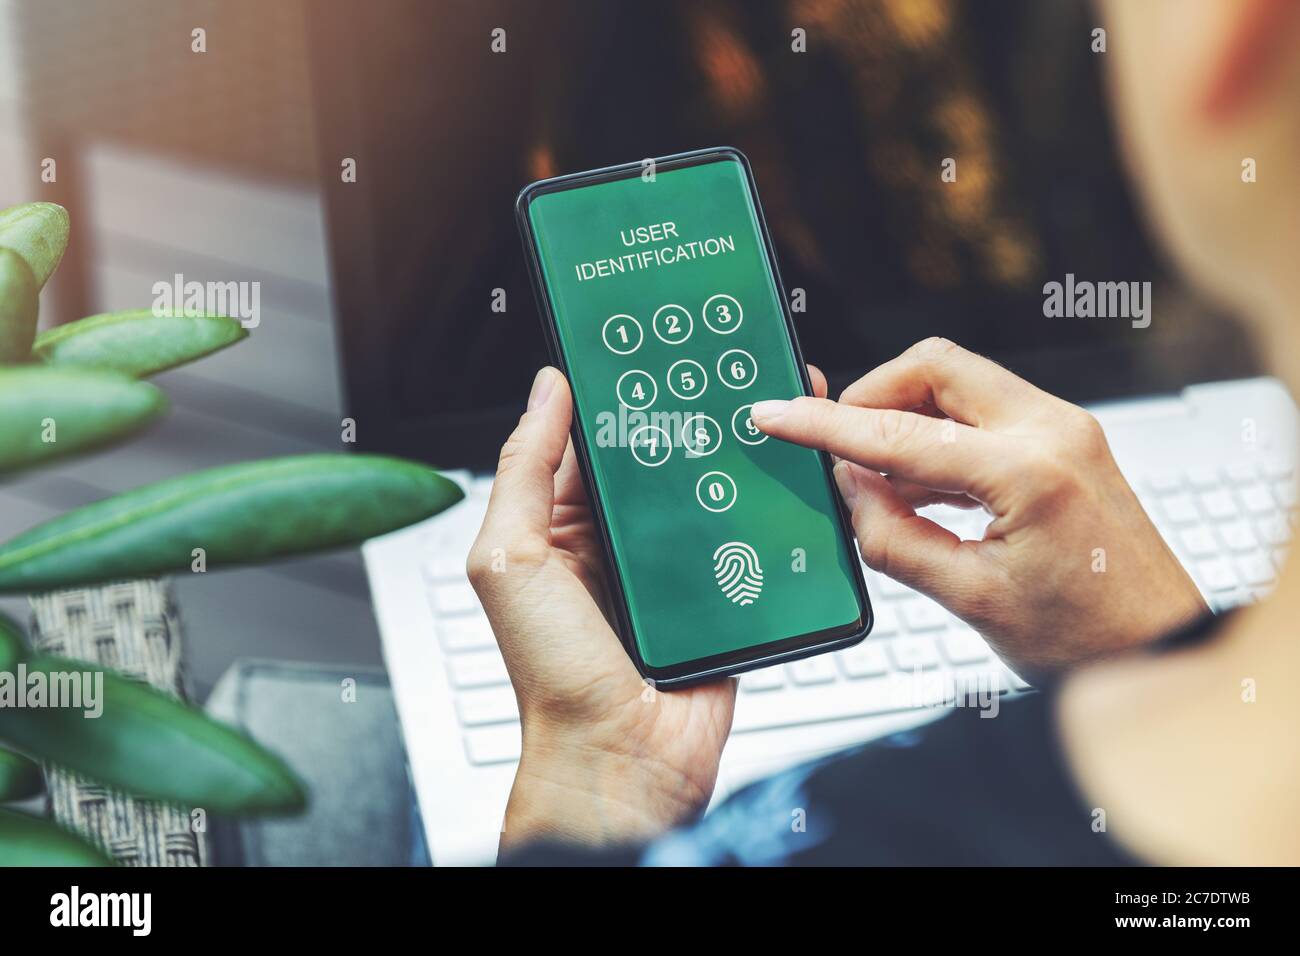 cyber-sécurité : femme utilisant une application mobile dans un smartphone pour l'authentification des utilisateurs de services bancaires sur internet Banque D'Images